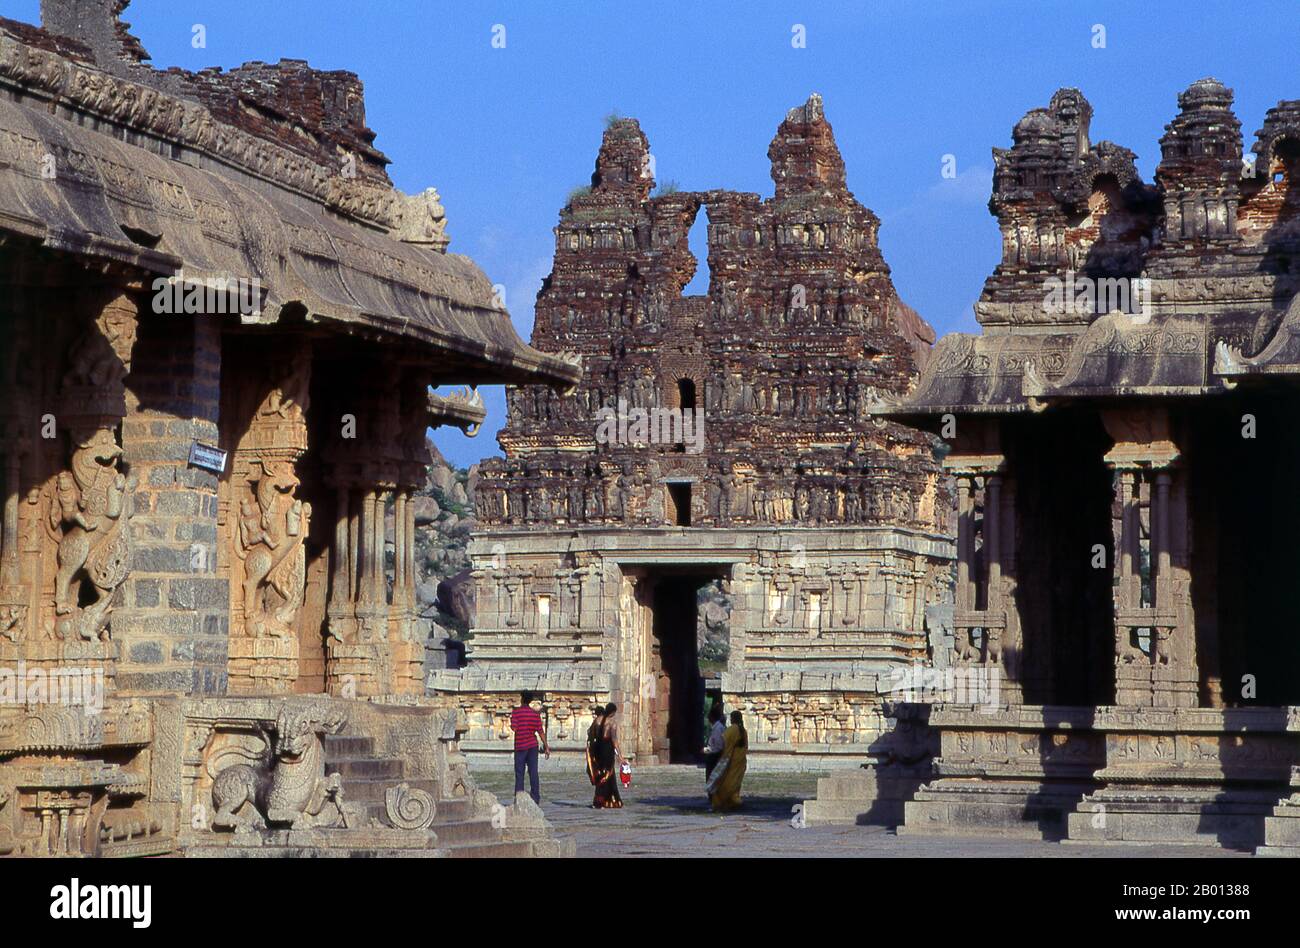 India: Tempio di Vitthala, Hampi, stato di Karnataka. Il Tempio di Vittala, costruito agli inizi del XVI secolo, è dedicato al dio indù Vithoba (conosciuto anche come Vitthala e Panduranga), un incarnazione di Vishnu o del suo avatar Krishna. Hampi è un villaggio del Karnataka, nello stato del Nord. Si trova all'interno delle rovine di Vijayanagara, l'ex capitale dell'Impero Vijayanagara. Antecedente la città di Vijayanagara, continua ad essere un importante centro religioso, che ospita il Tempio di Virupaksha, così come molti altri monumenti appartenenti alla città vecchia. Foto Stock